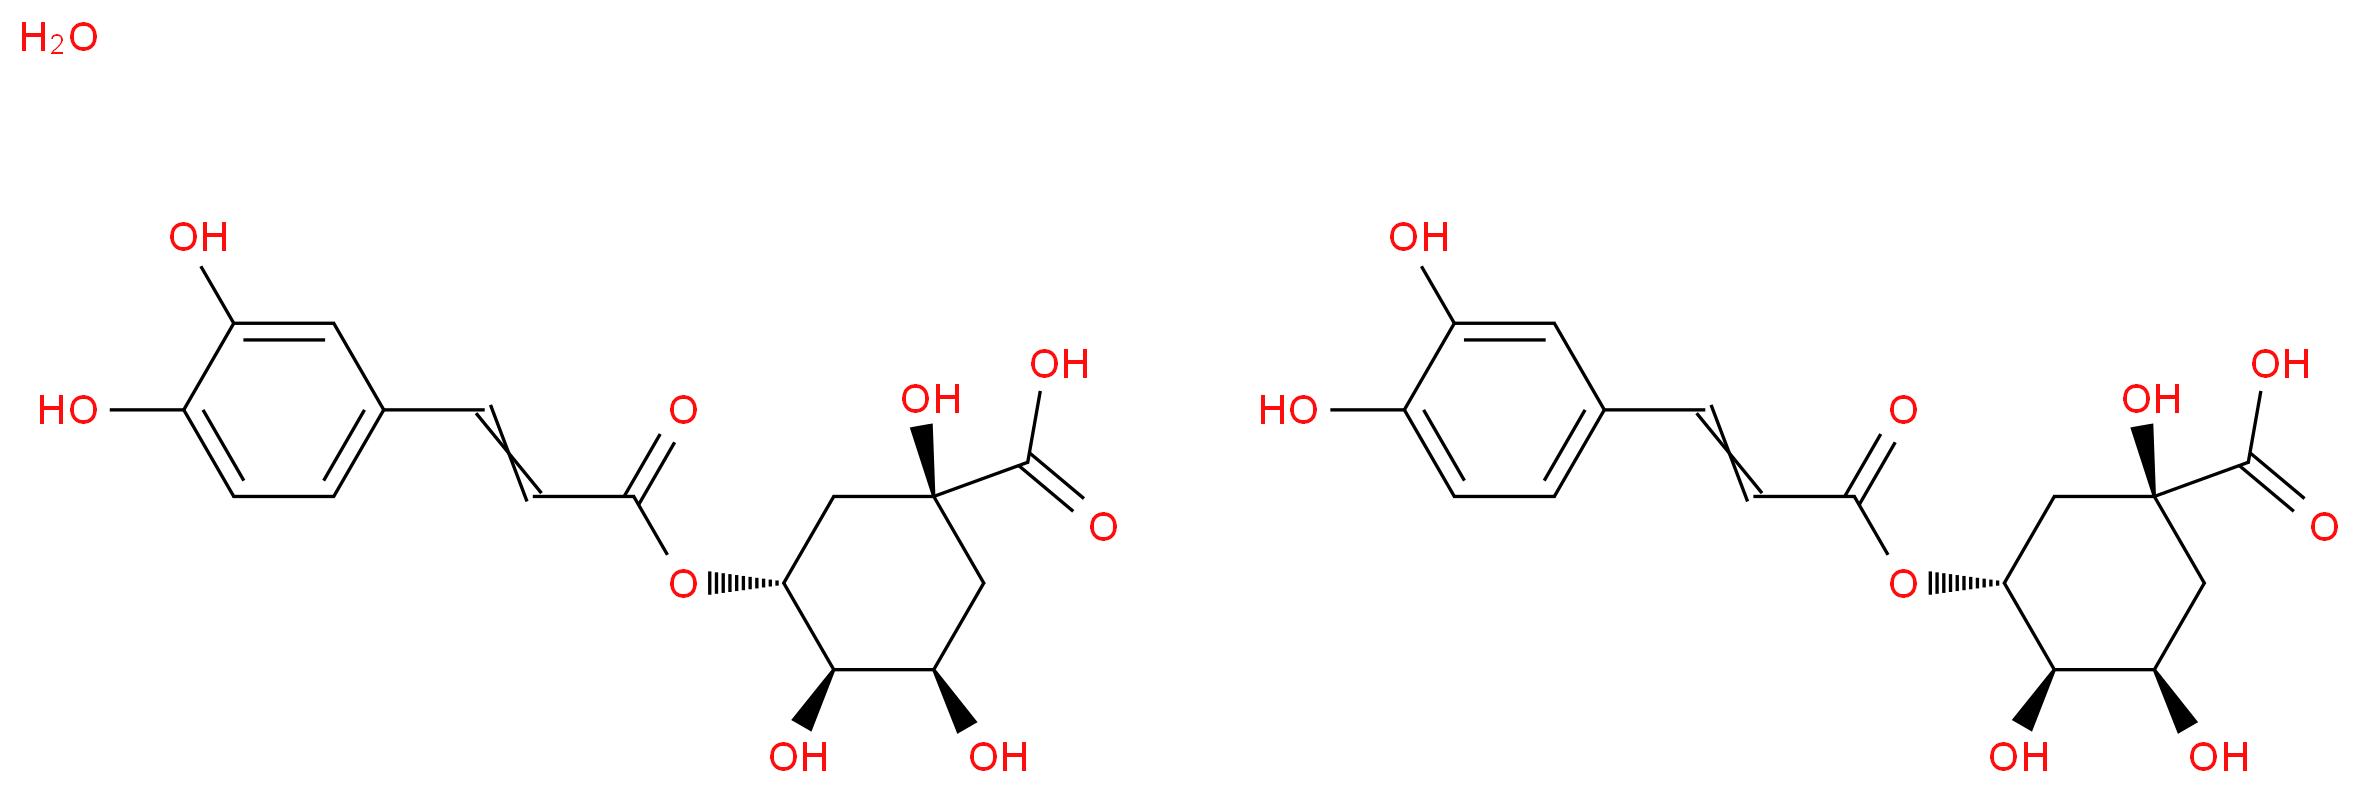 6001-76-9 molecular structure